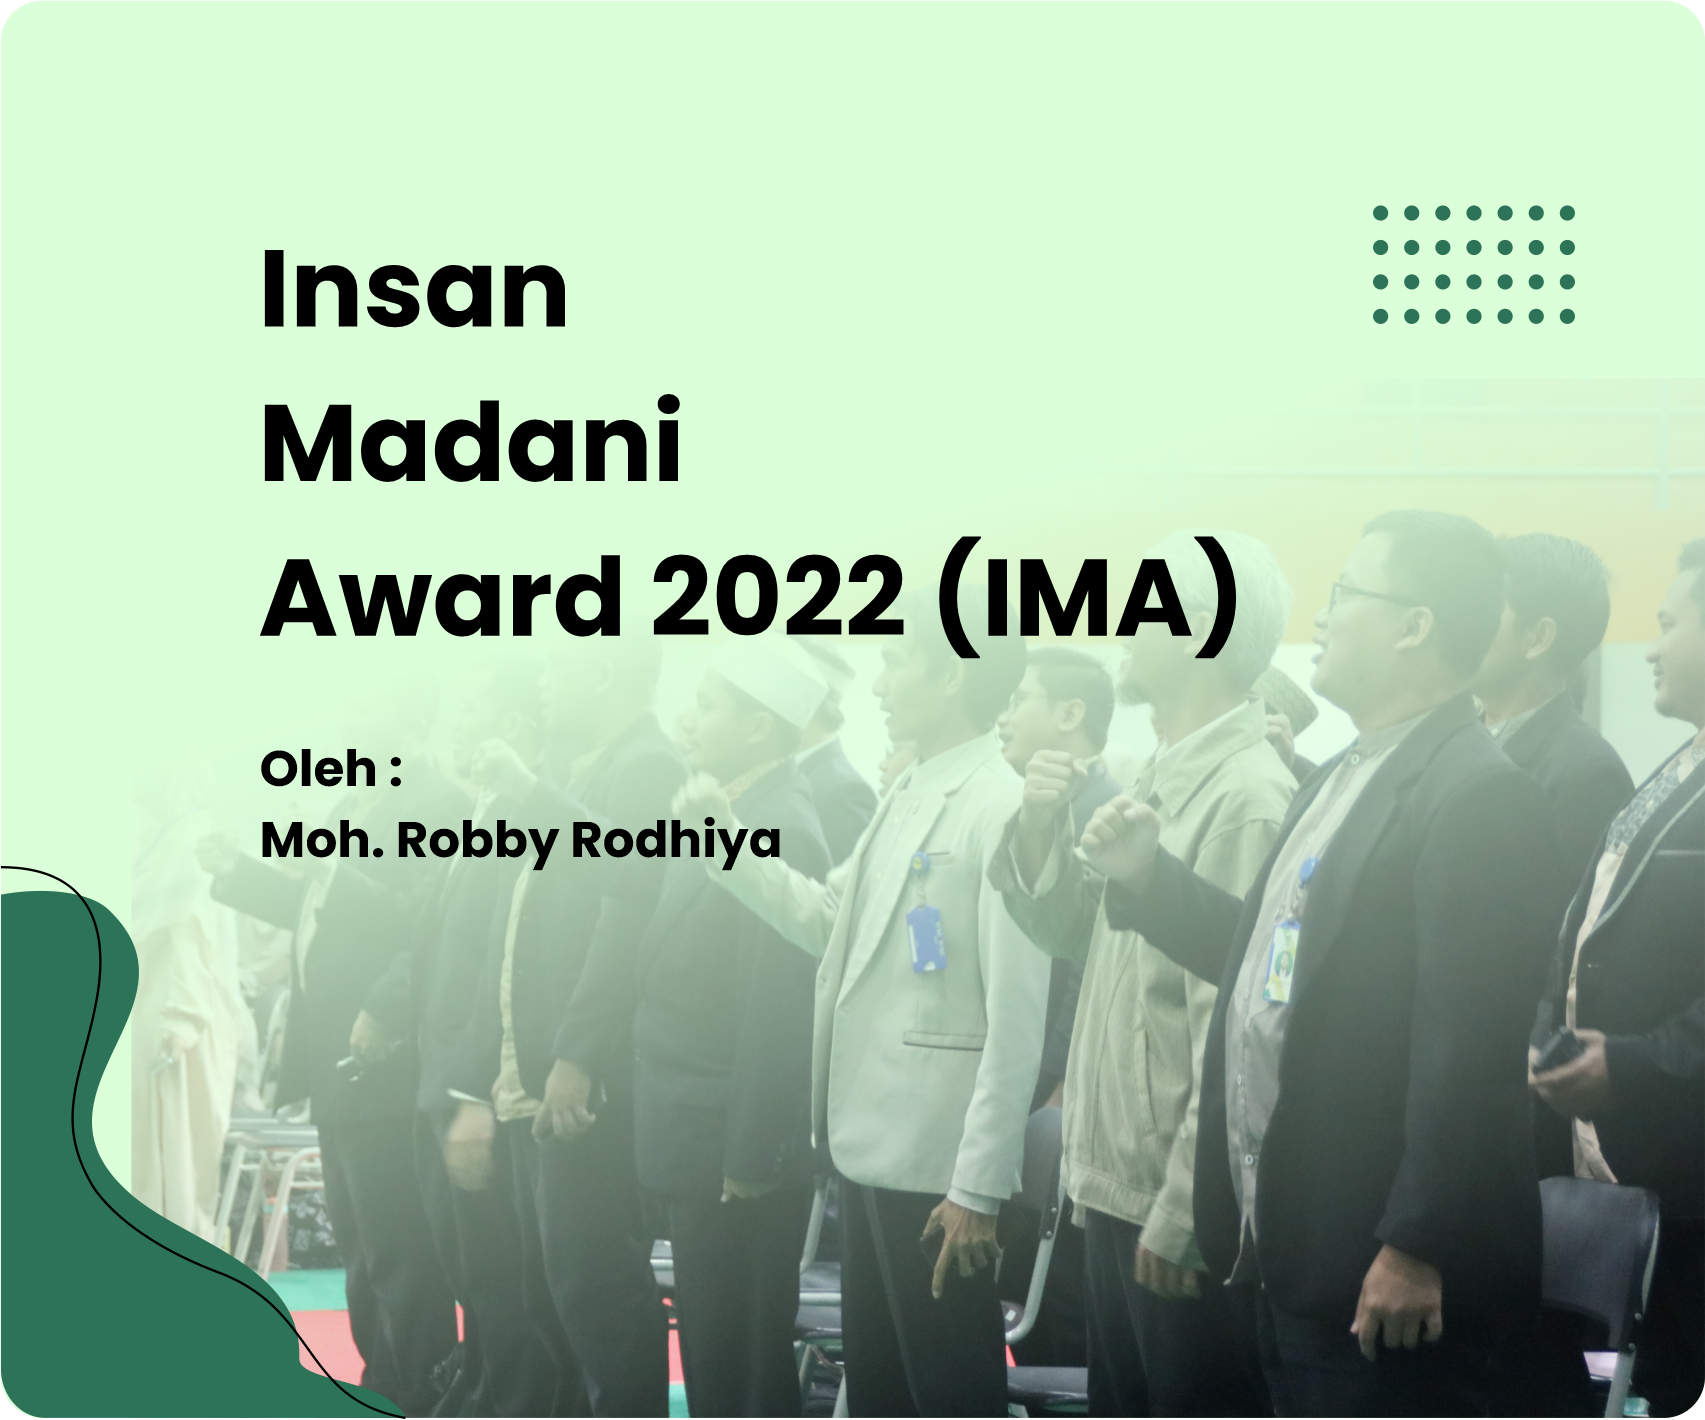 INSAN MADANI AWARD 2022